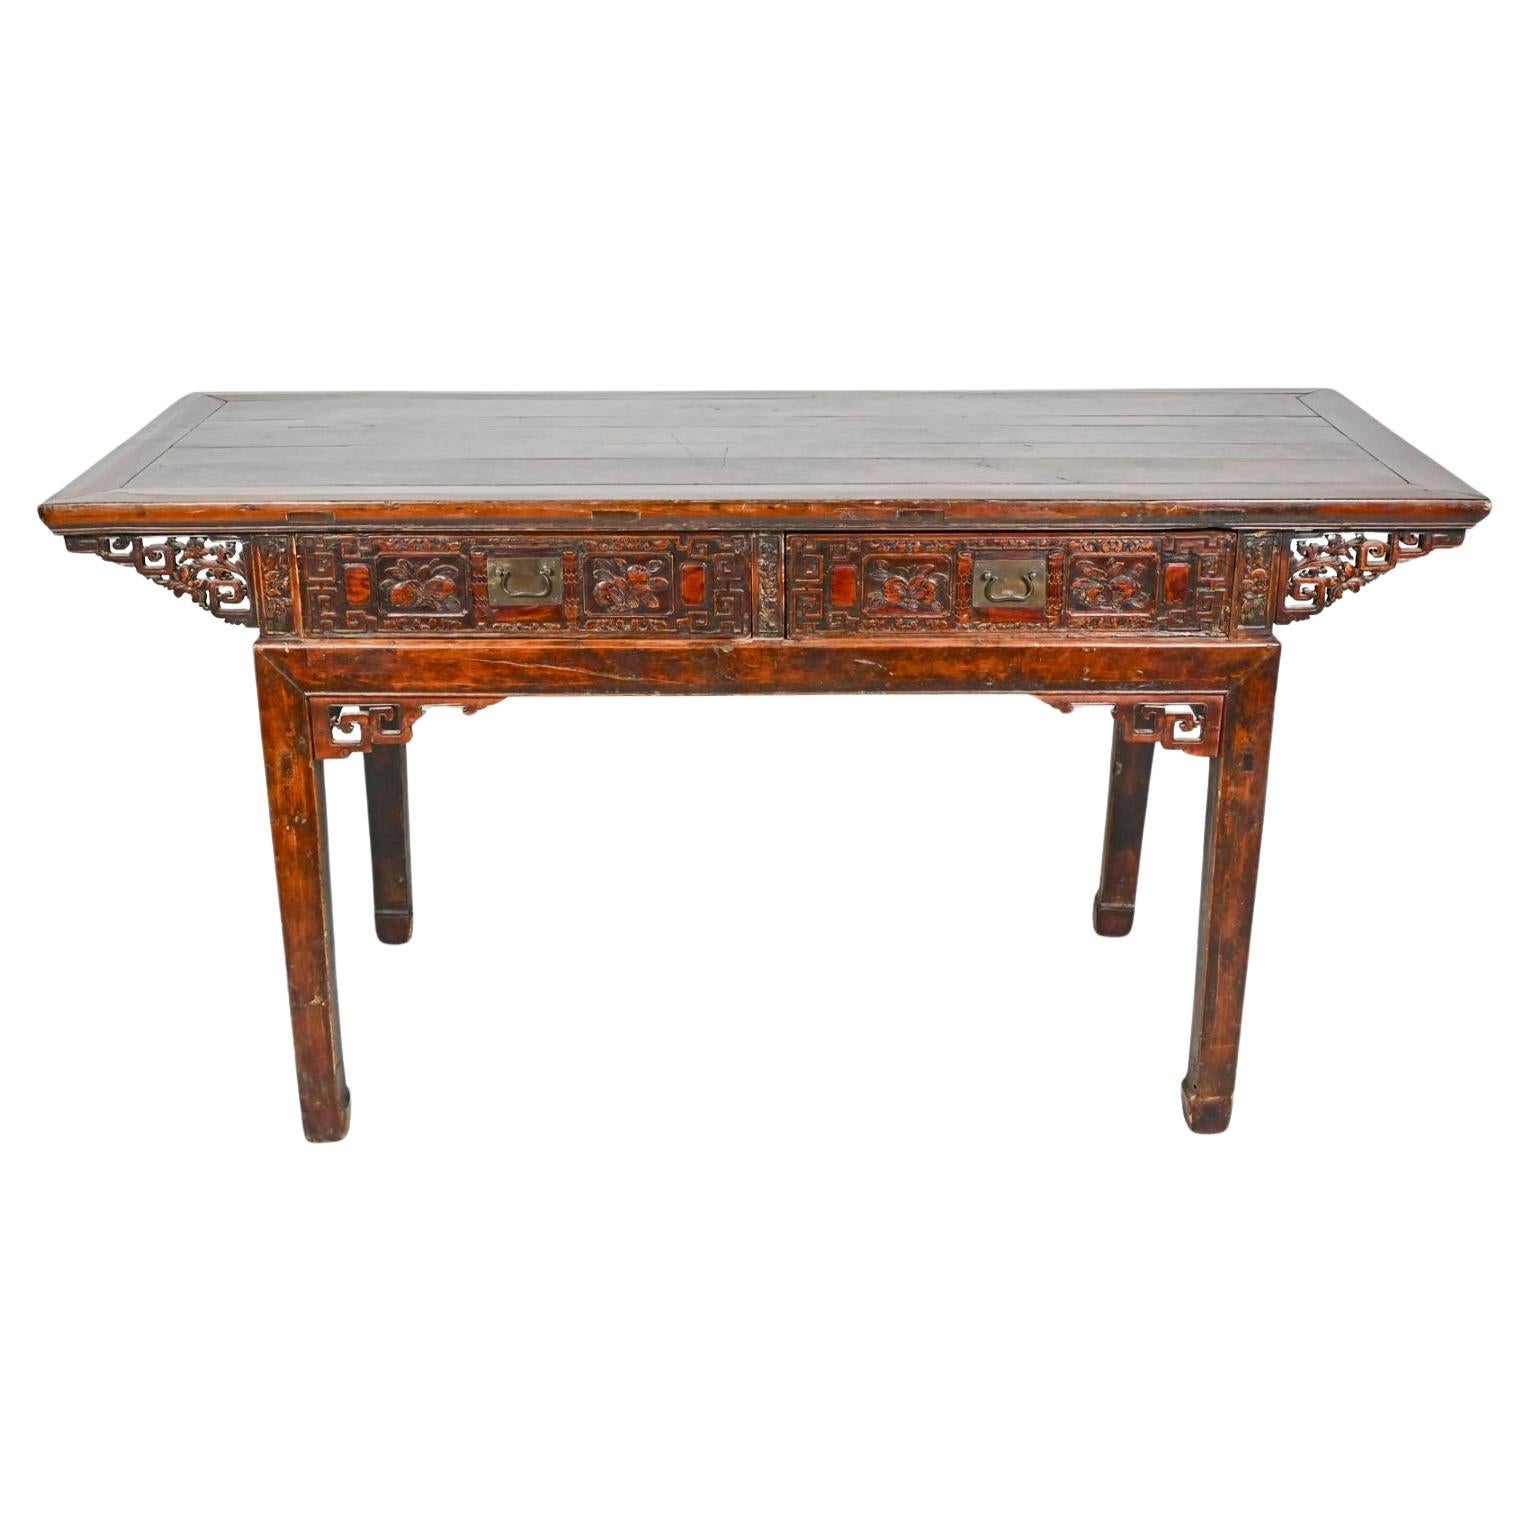 Ancienne table d'autel chinoise sculptée / bureau